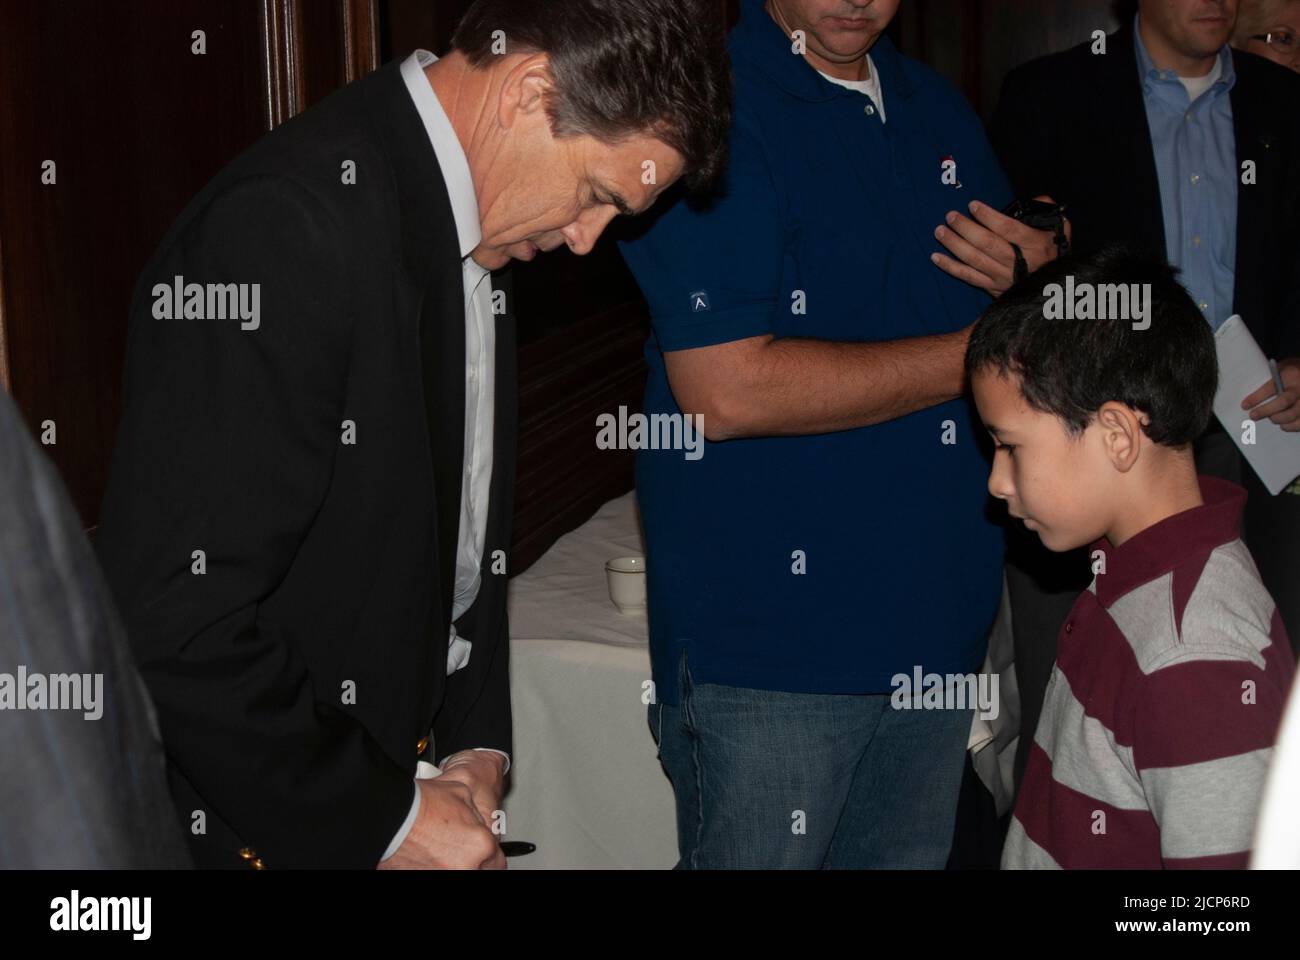 El gobernador de Texas Rick Perry firmó autógrafos en un evento electoral en el restaurante italiano Maggiano's en Dallas, Texas (North Park Center) Foto de stock